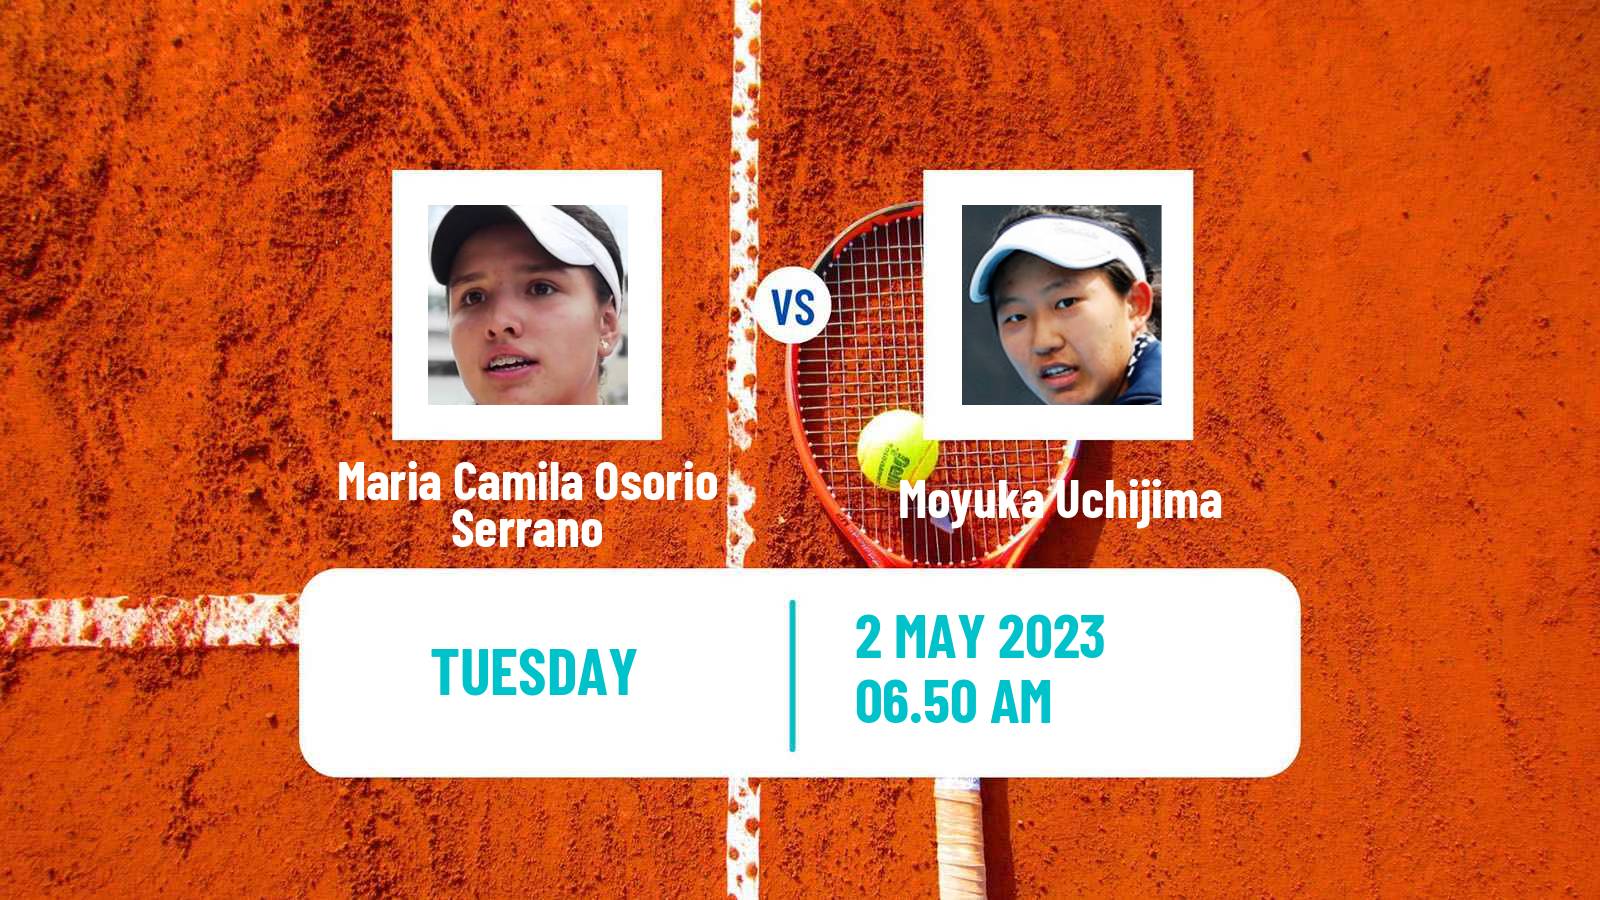 Tennis ATP Challenger Maria Camila Osorio Serrano - Moyuka Uchijima